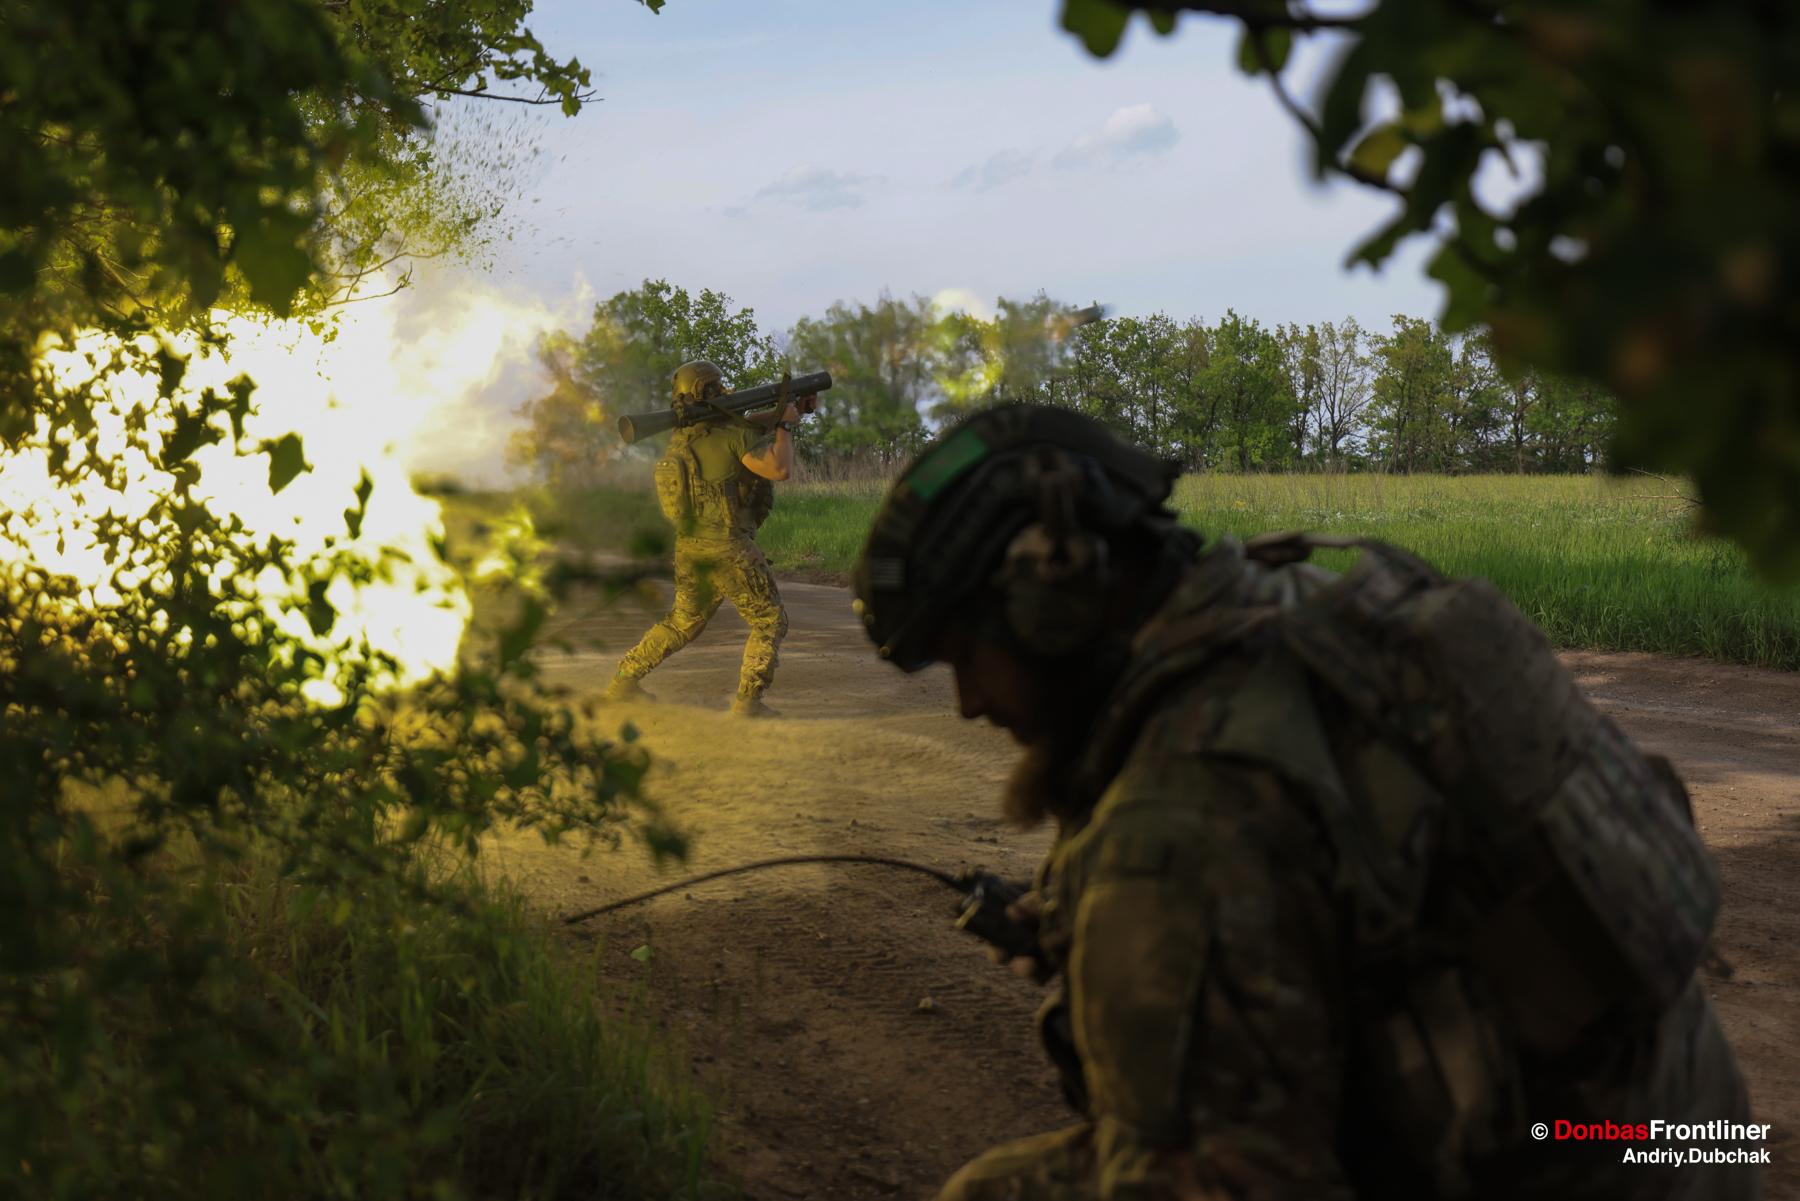 donbas frontliner, war, Kurt, Karl Gustav grenade launcher fire, Ukraine, Andriy Dubchak, photo